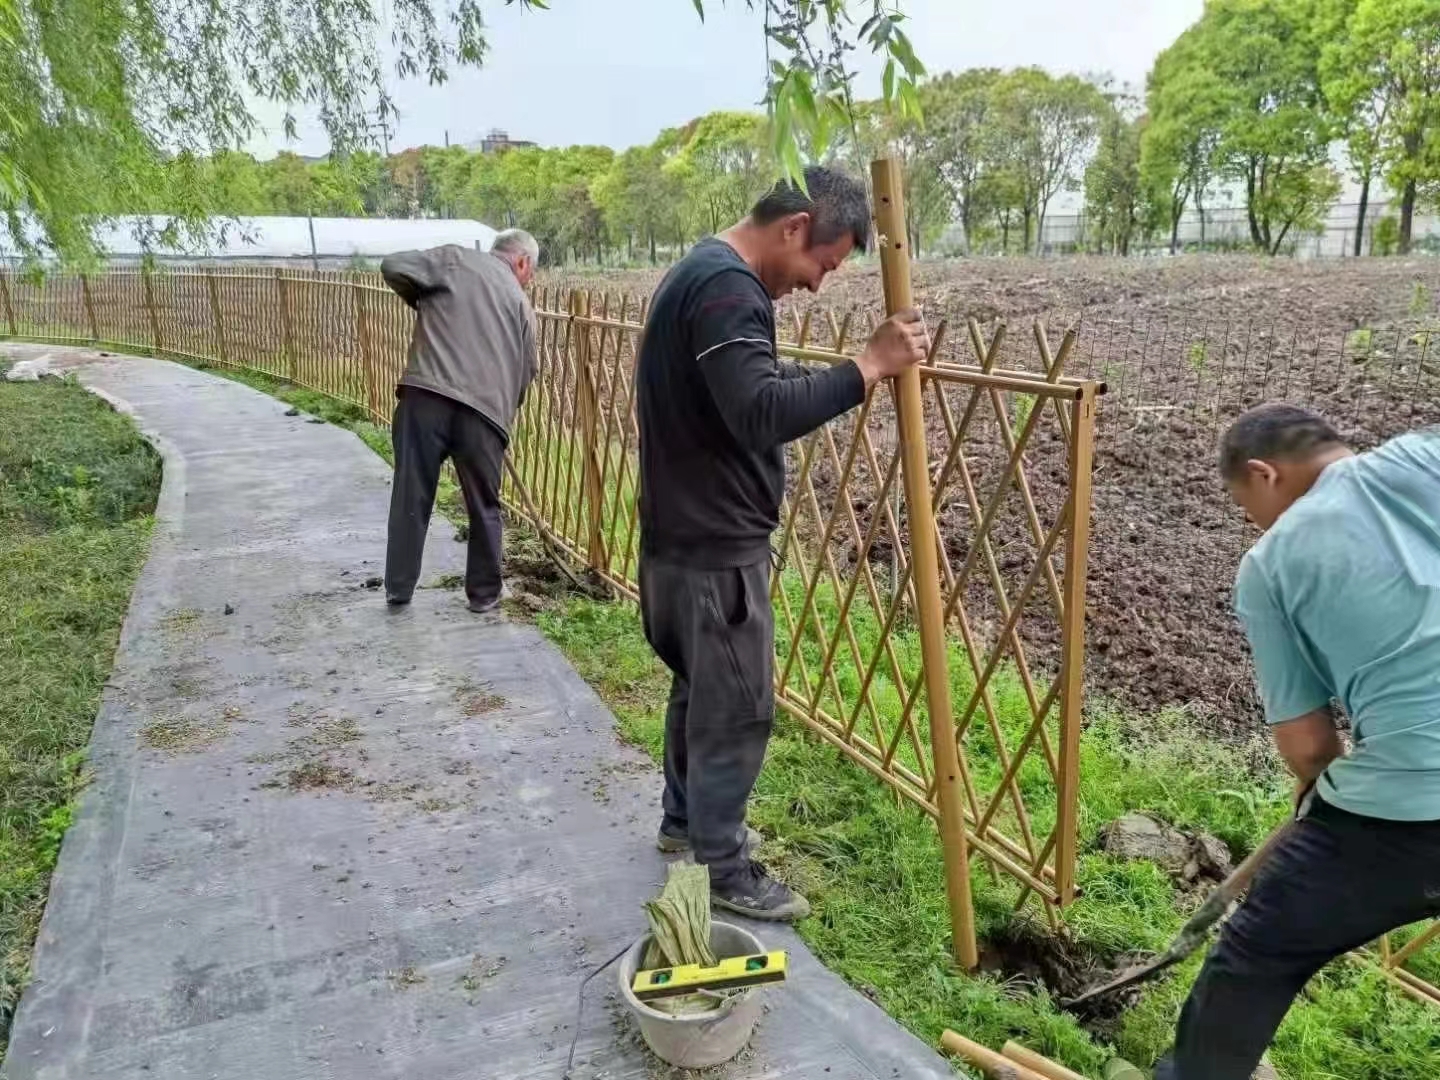 牡丹江 竹篱笆 菜园围栏桂林灵川木栅栏仿竹护栏